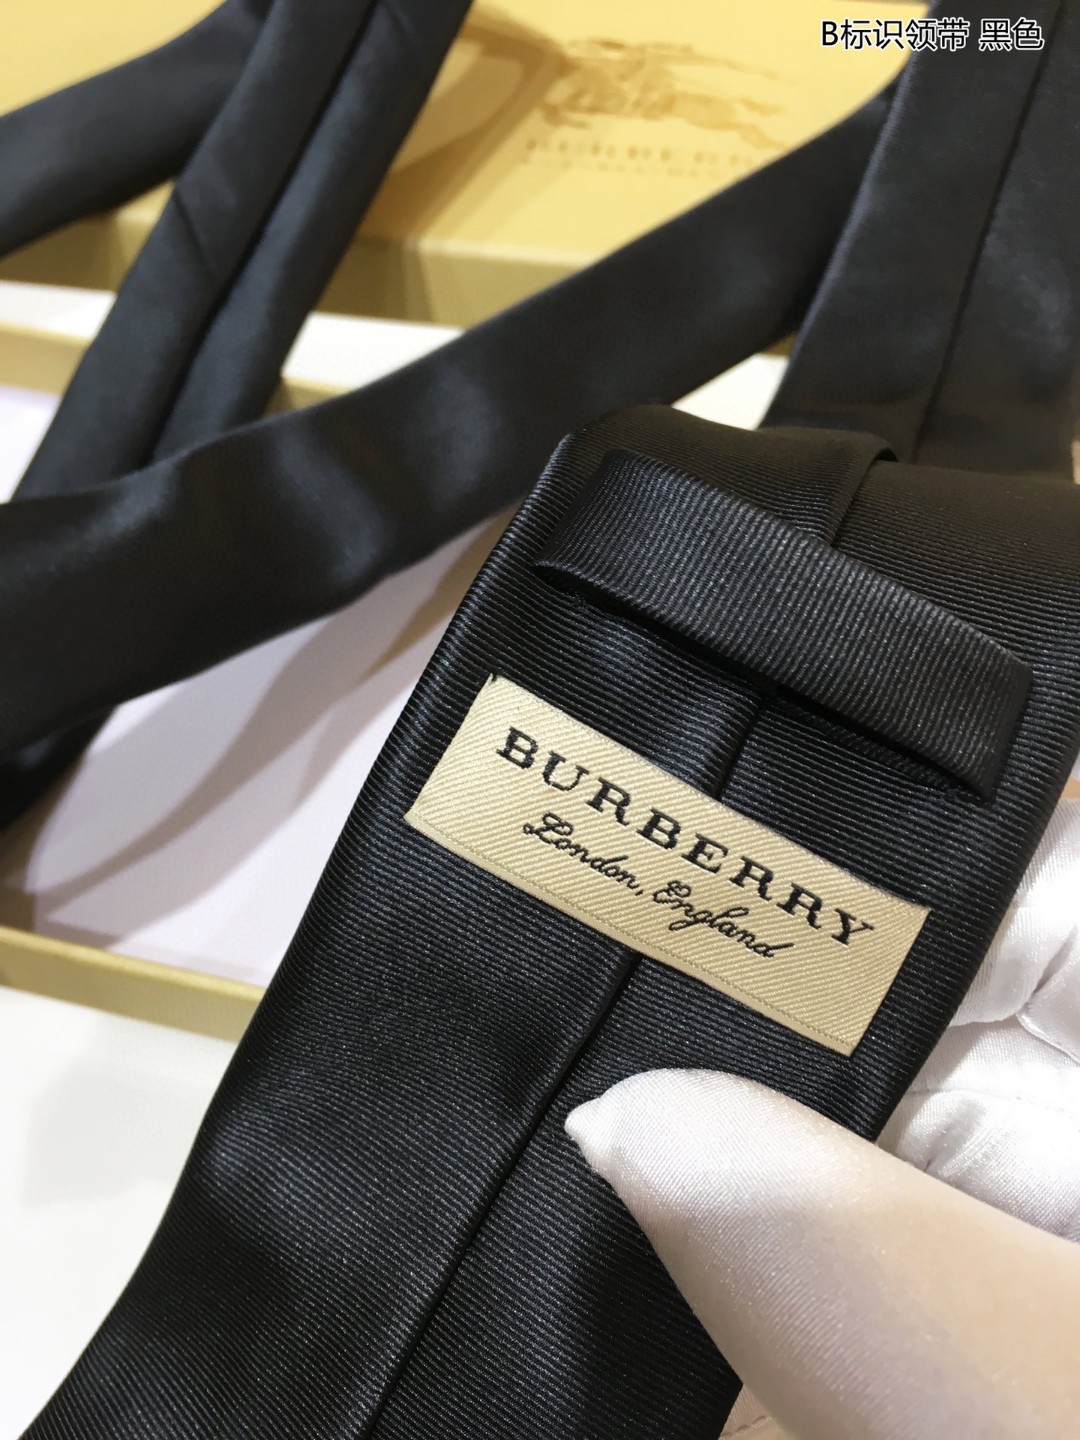 Burberry巴宝莉100%顶级提花真丝B标识领带